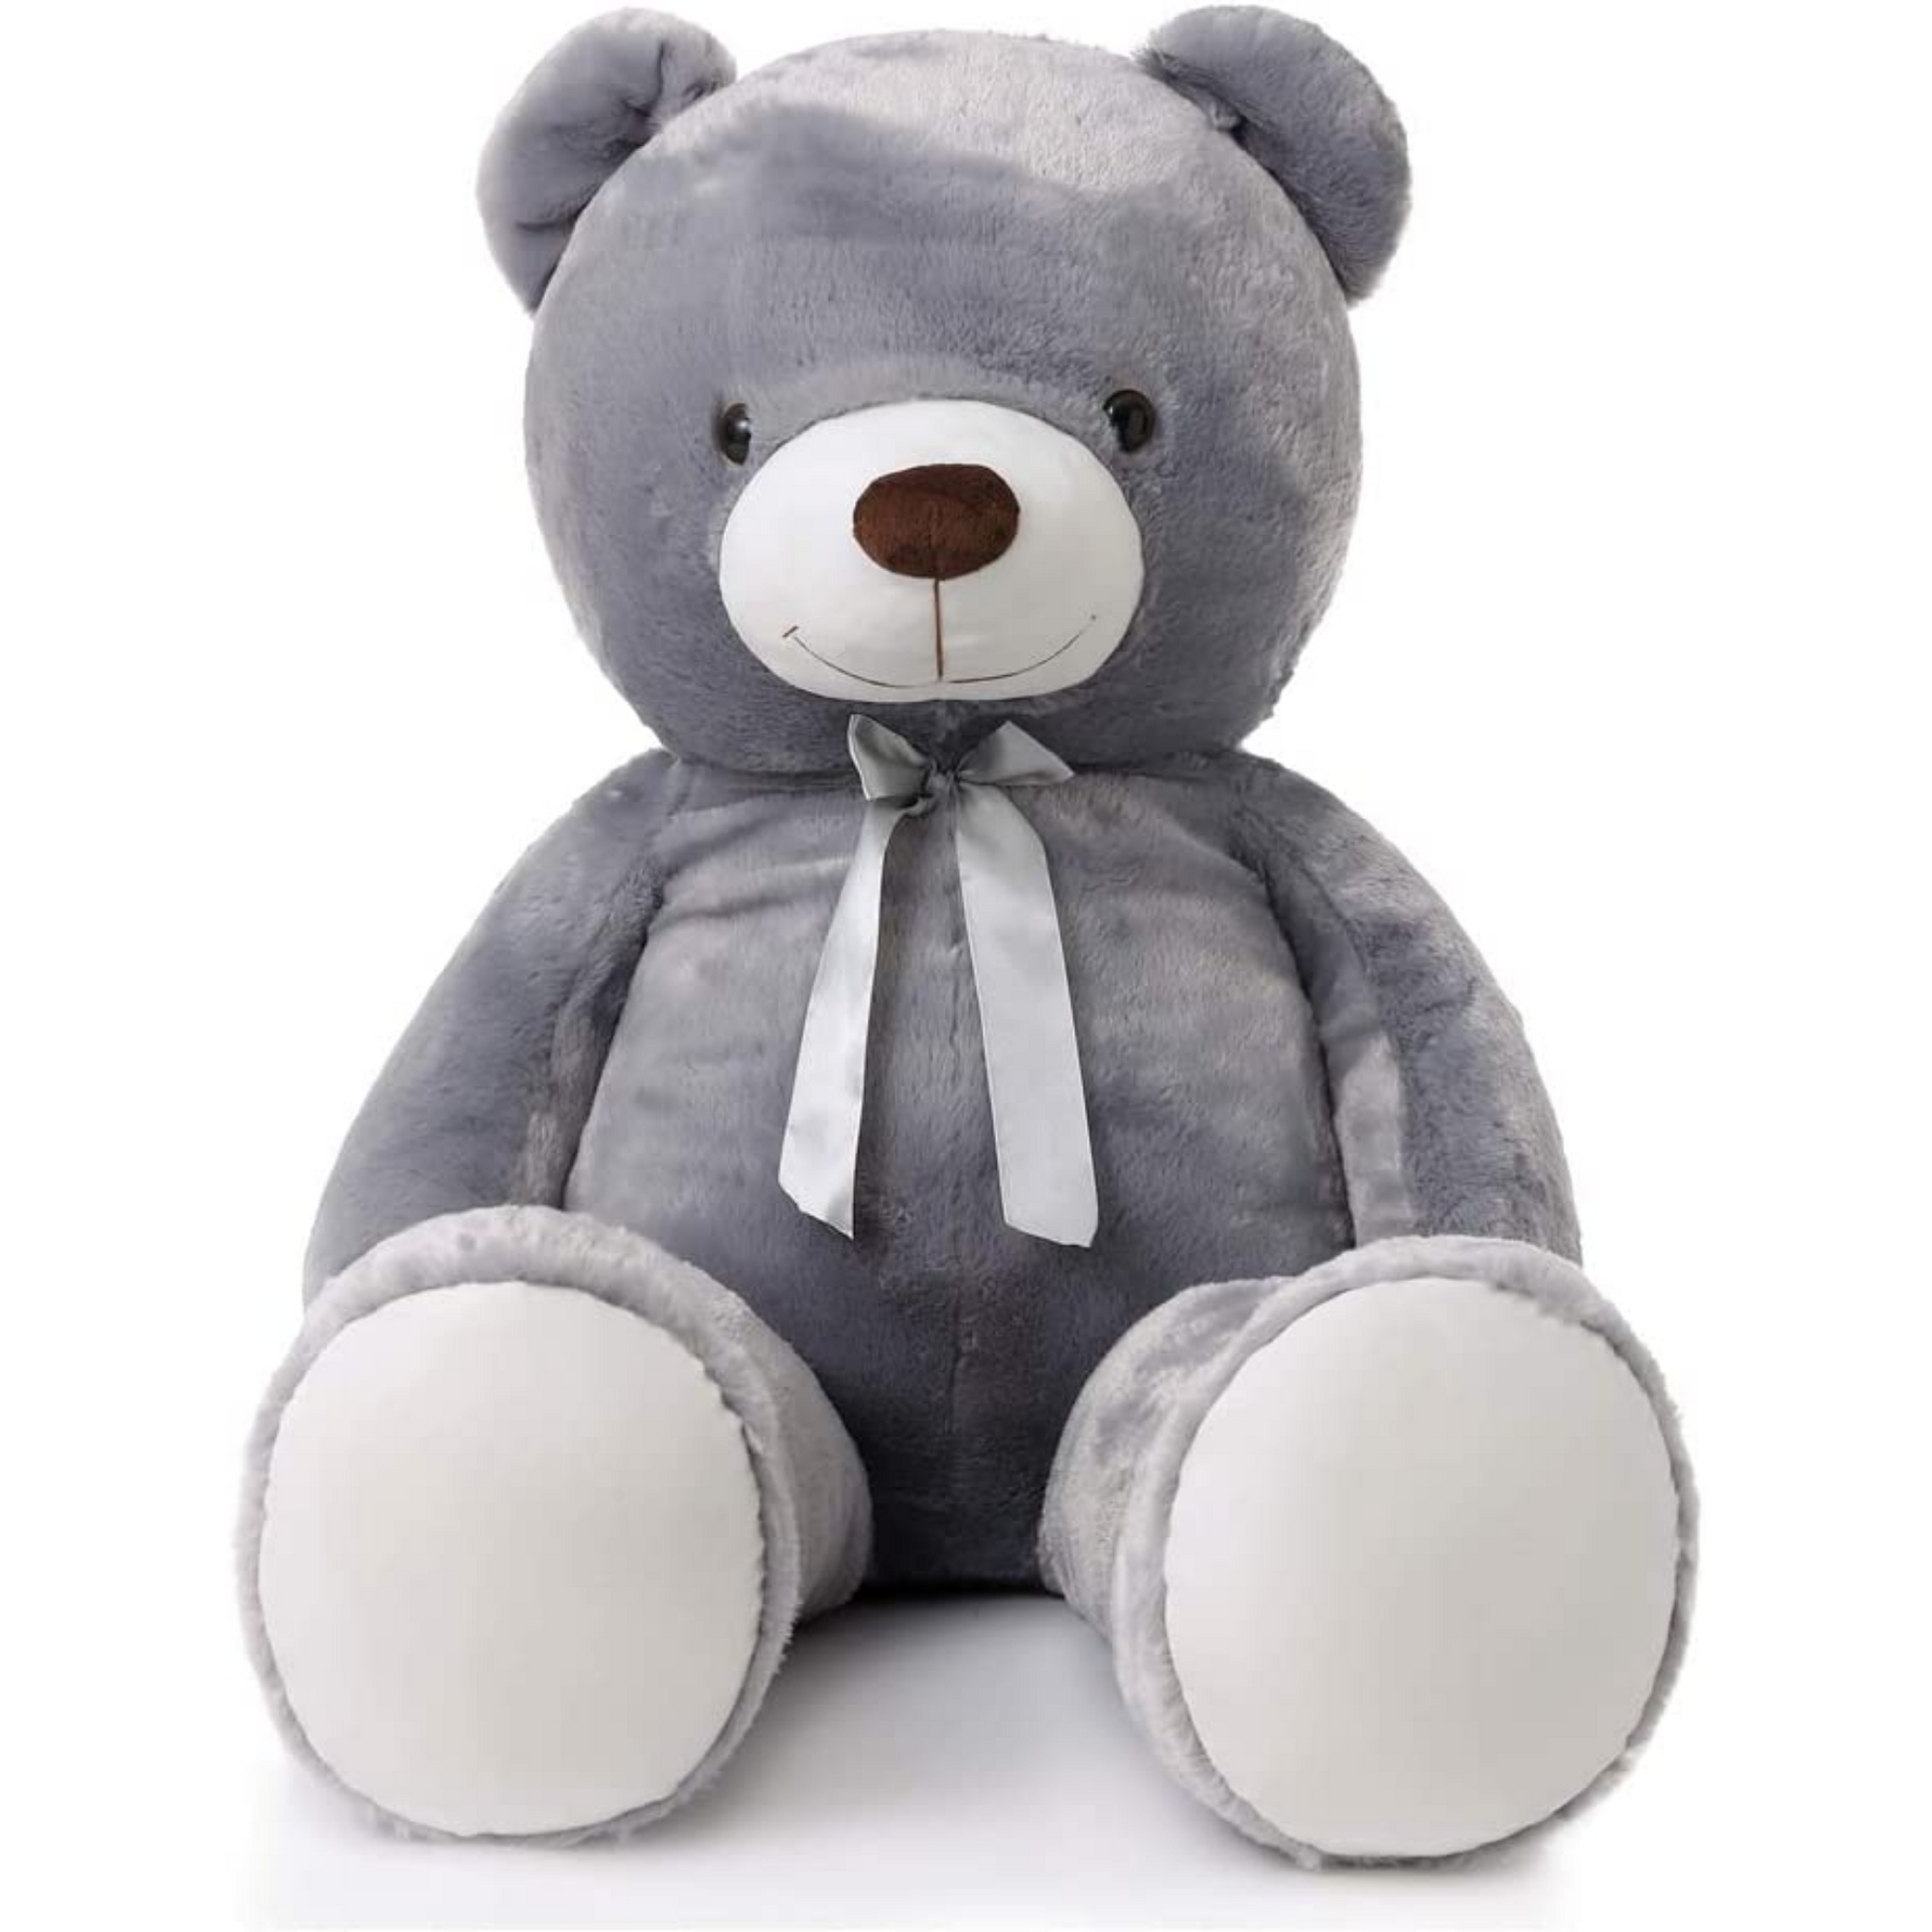 Giant Teddy Bear Stuffed Toy, 47 inch, Grey